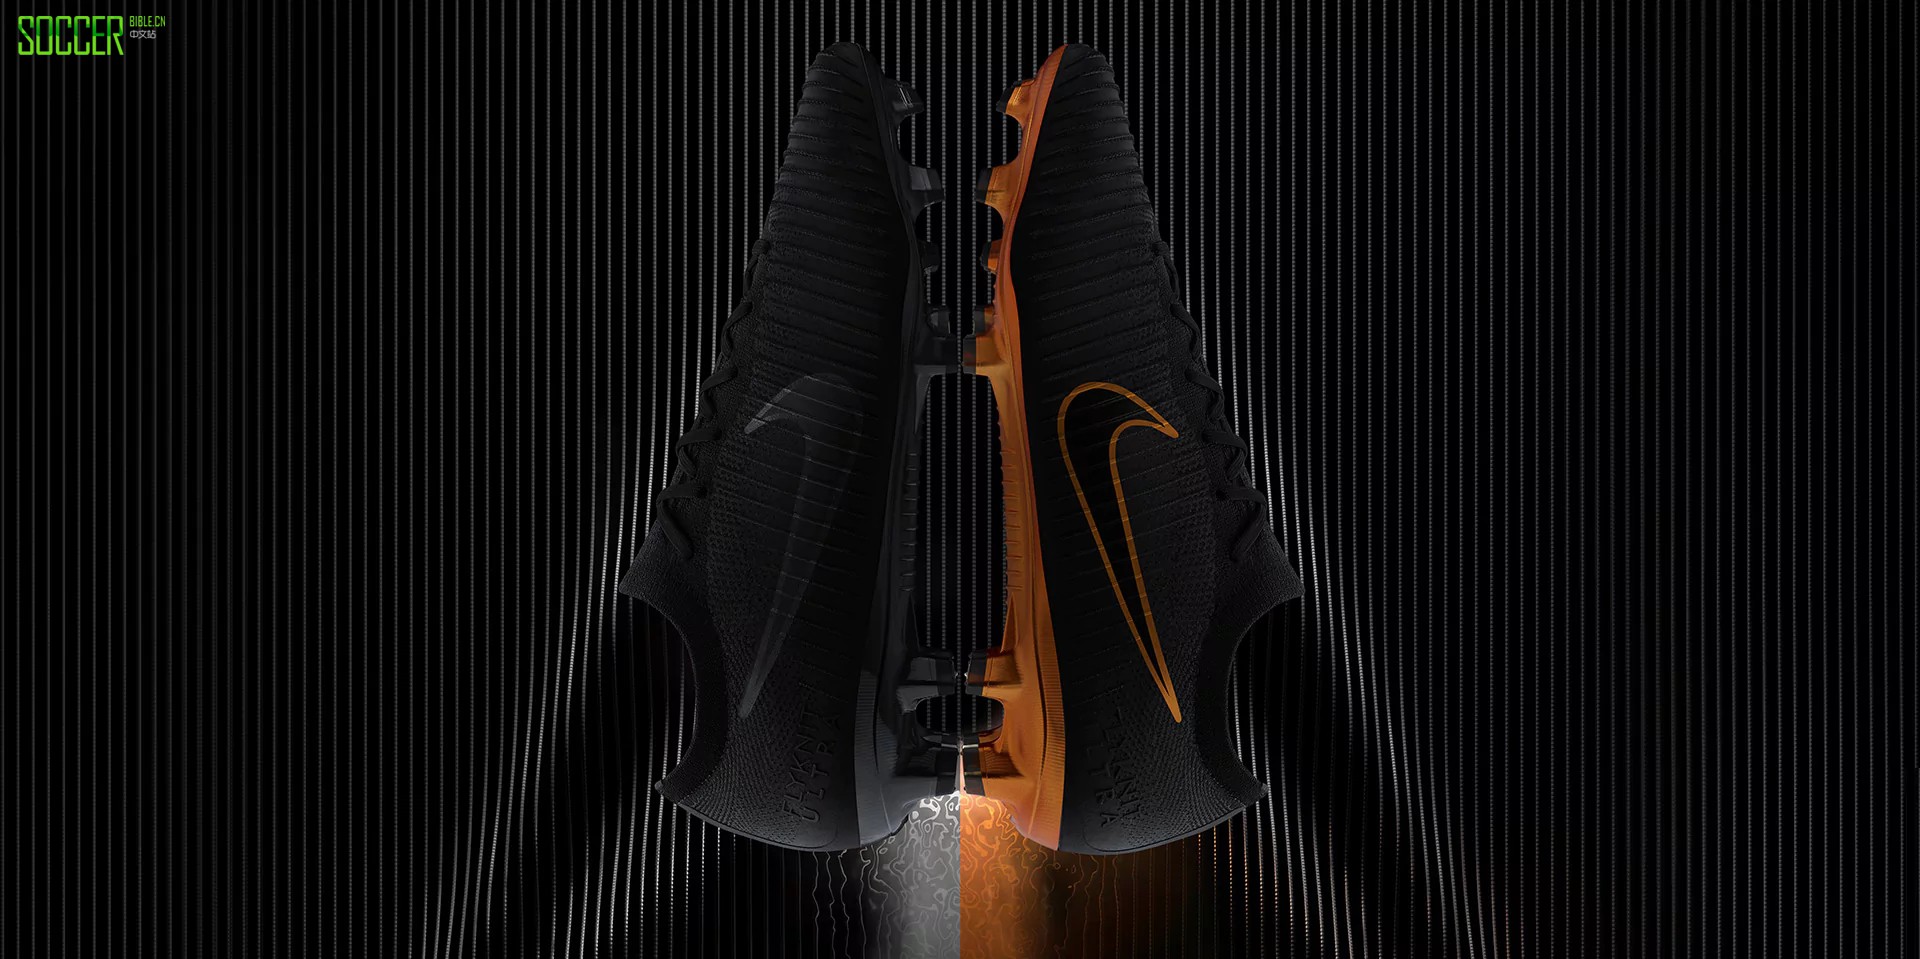 Coutinho's Unique Leather Nike Mercurial Vapor XI Boots